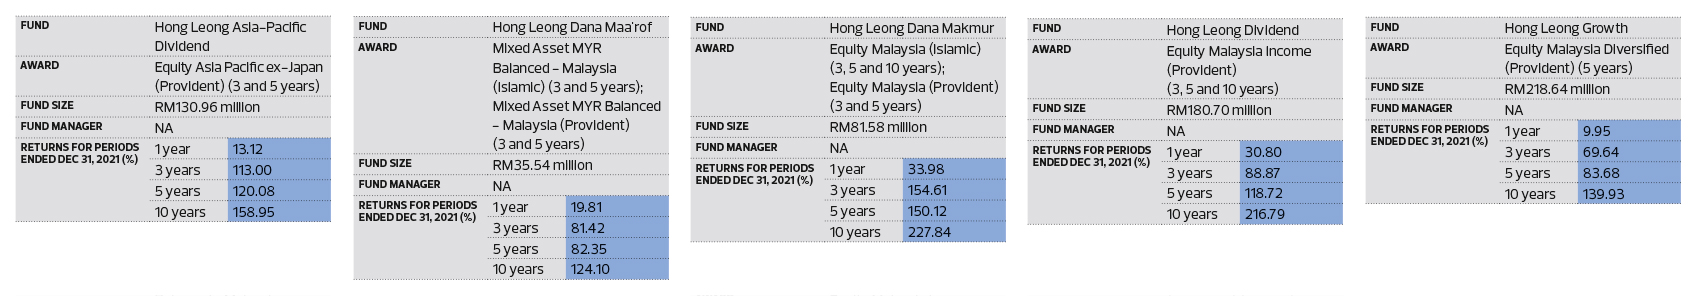 Rhb asia dynamic fund